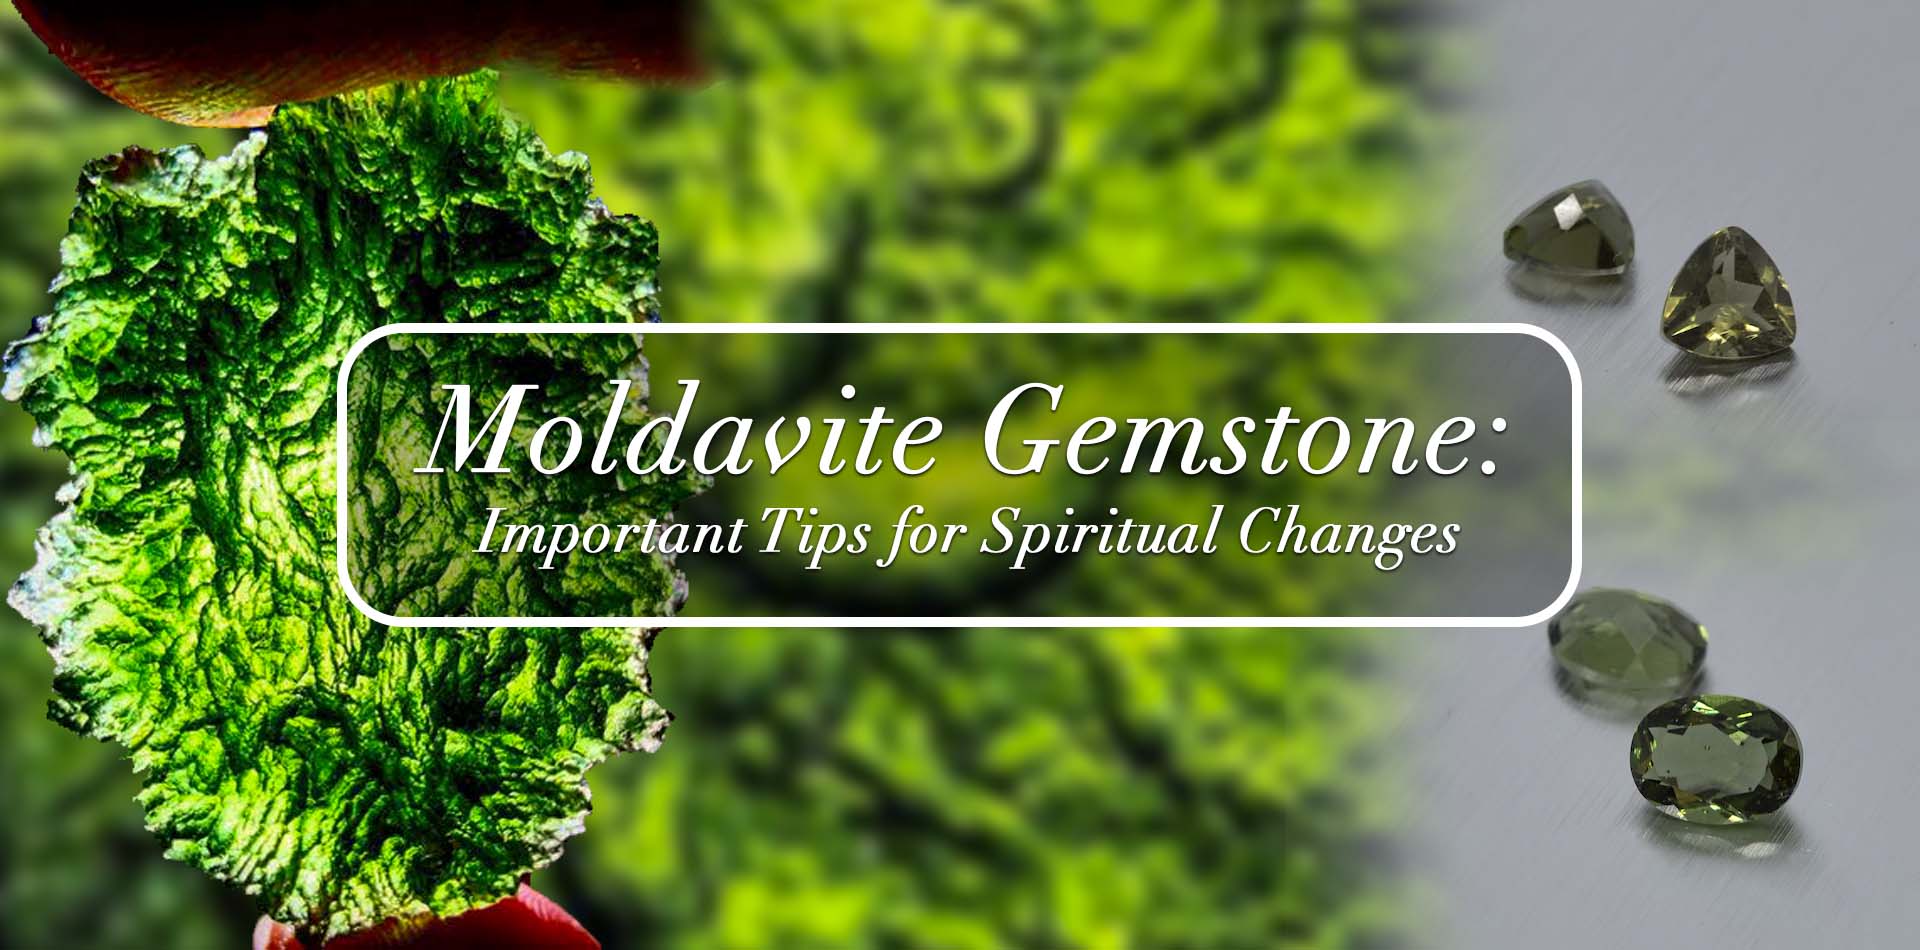 Moldavite Gemstone: Important Tips for Spiritual Changes